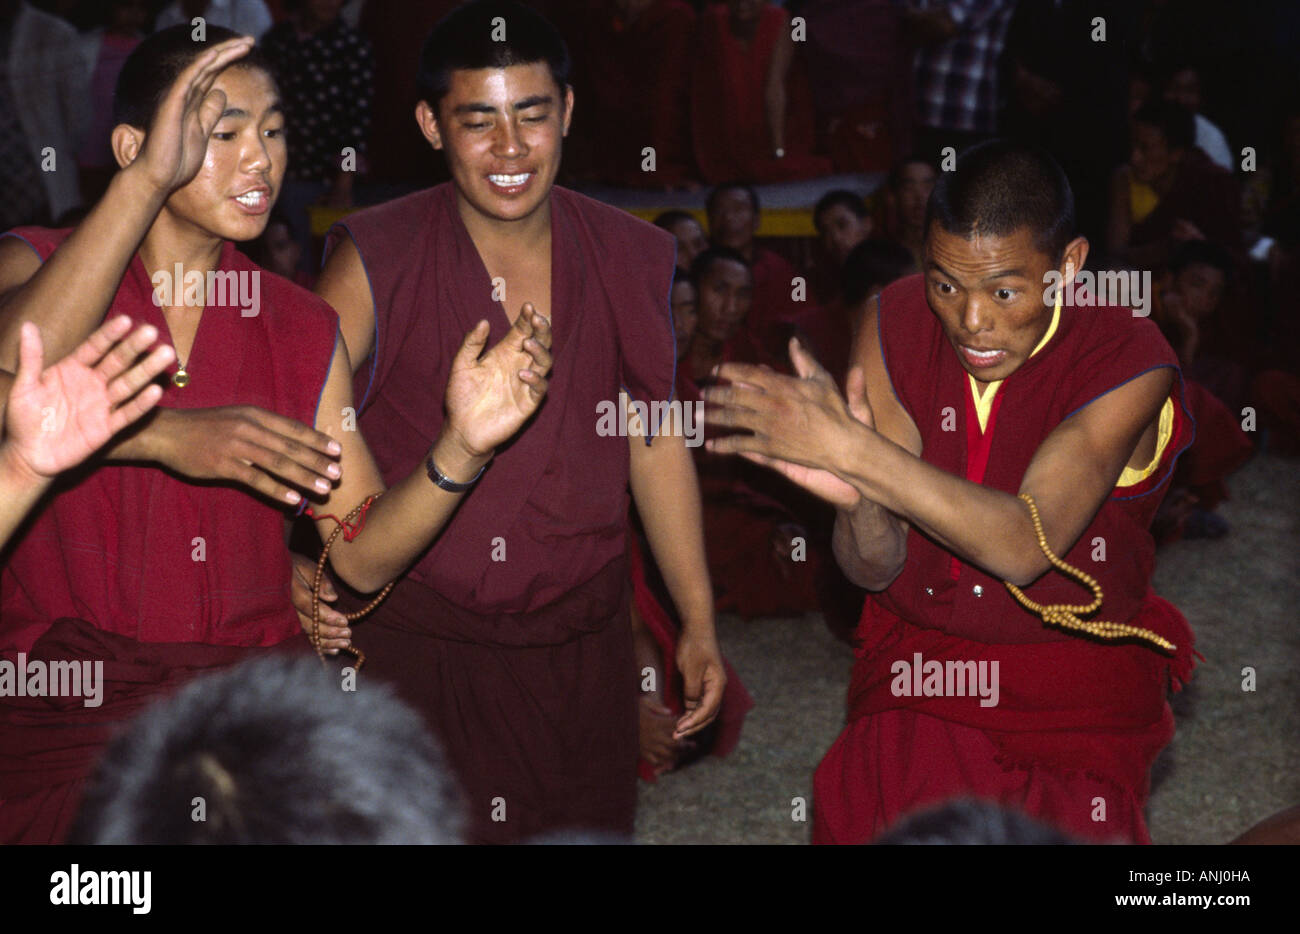 Les moines bouddhistes tibétains débattent de points de doctrine dans leur style distinctif de Challenger et de Defender. Dharamsala, Himachal Pradesh. Inde Banque D'Images